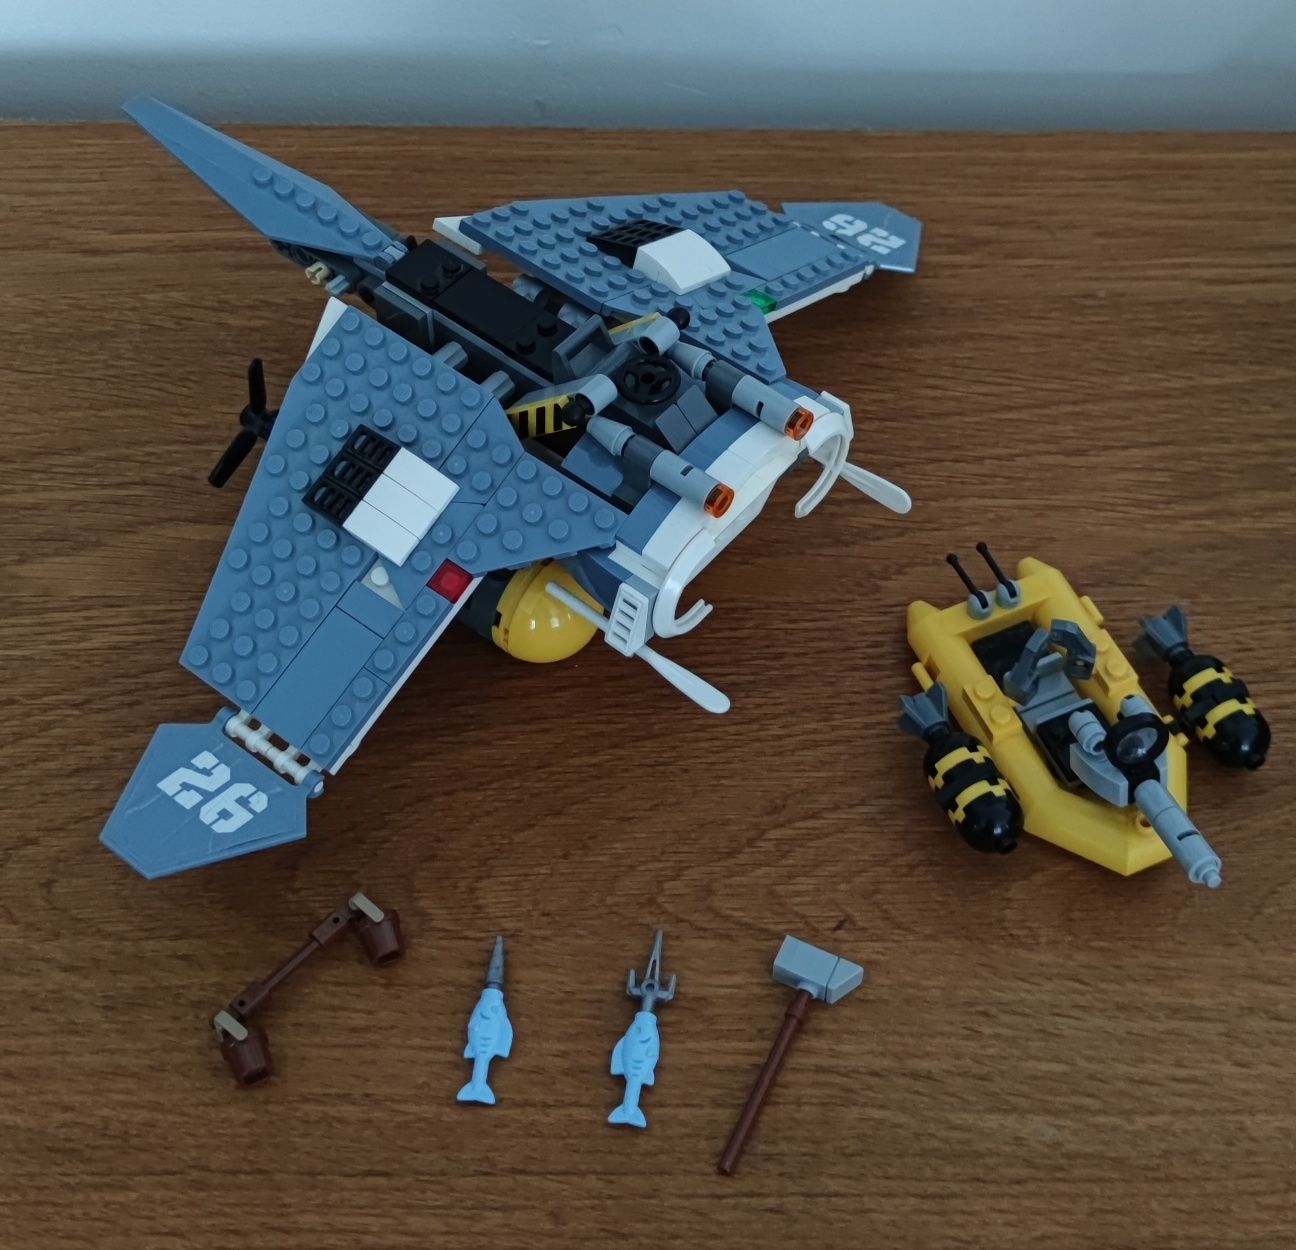 LEGO Ninjago Movie 70609 Bombowiec Manta Ray kompletny pudełko instruk